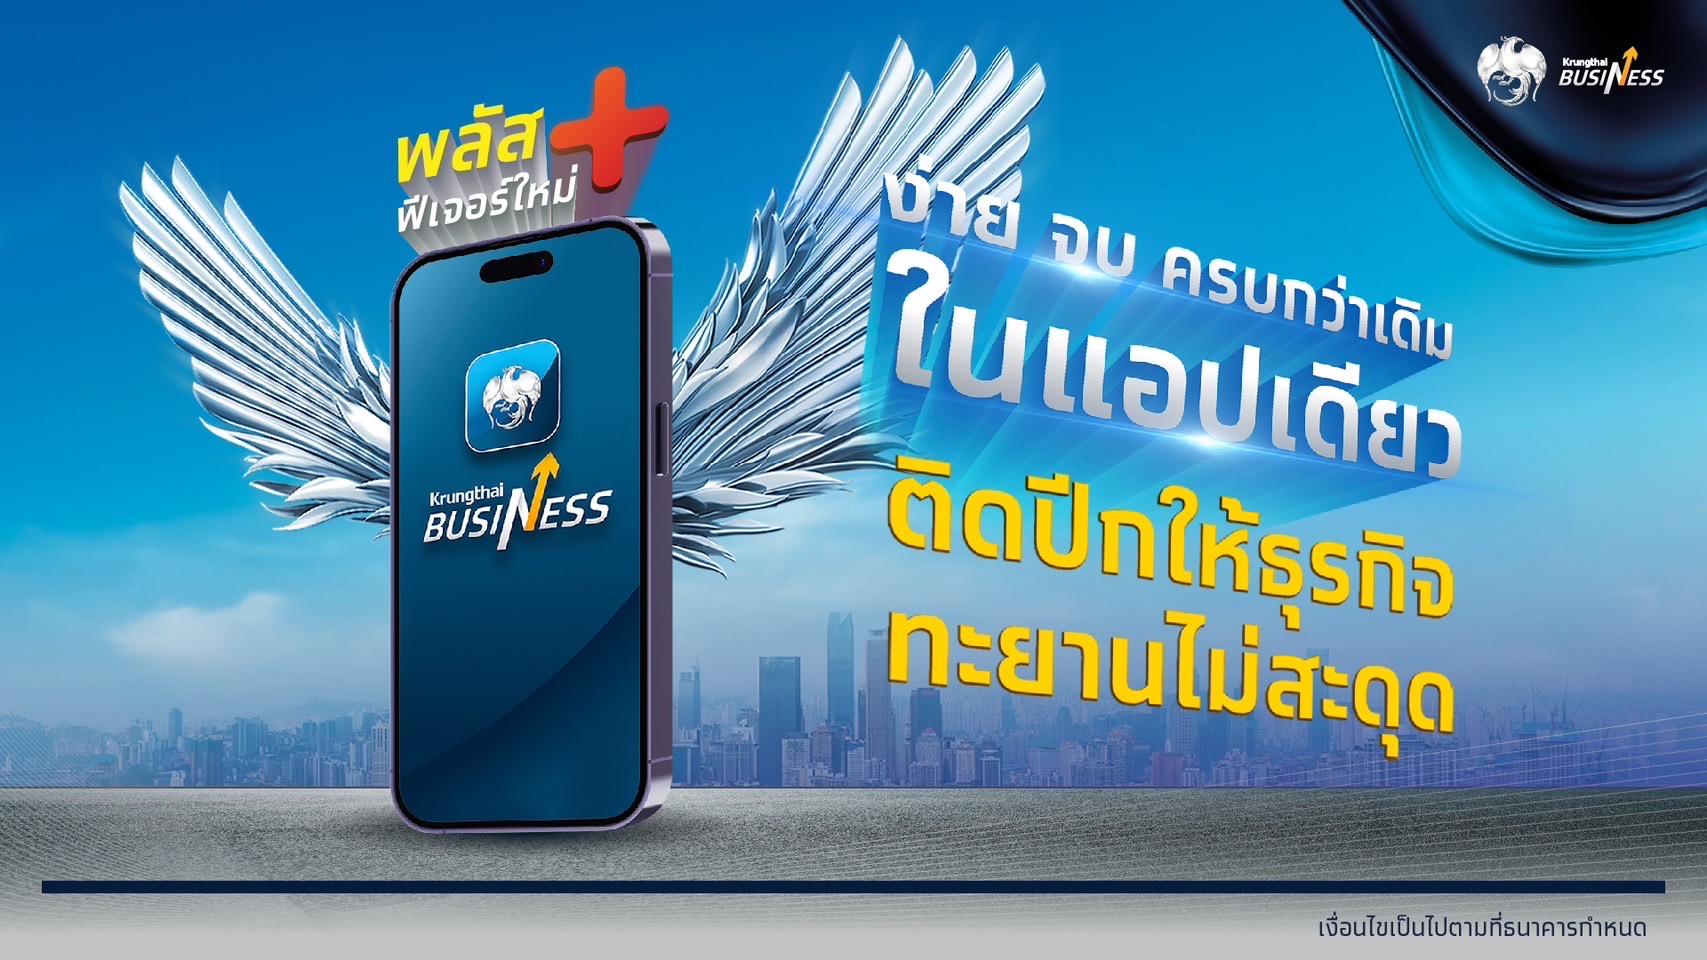 กรุงไทย ยกระดับบริการดิจิทัลแพลตฟอร์ม Krungthai Business ตอกย้ำการให้บริการจัดการทางการเงินสำหรับธุรกิจ